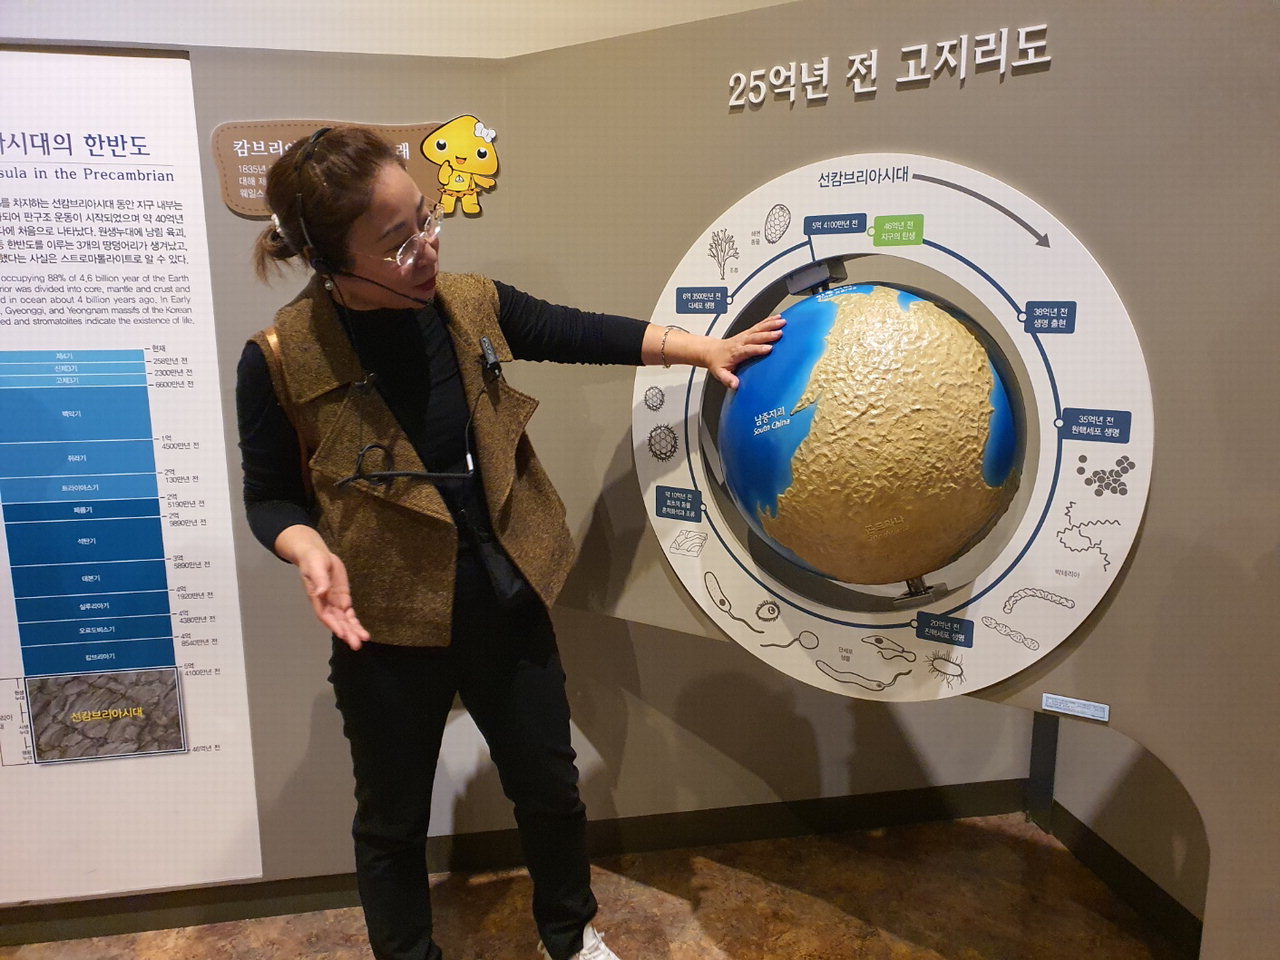 22일 자연사관 체험에서 김종랑 대표가 한반도의 자연사를 주제로 35억년 전의 지구의 위치를 설명하고 있다.